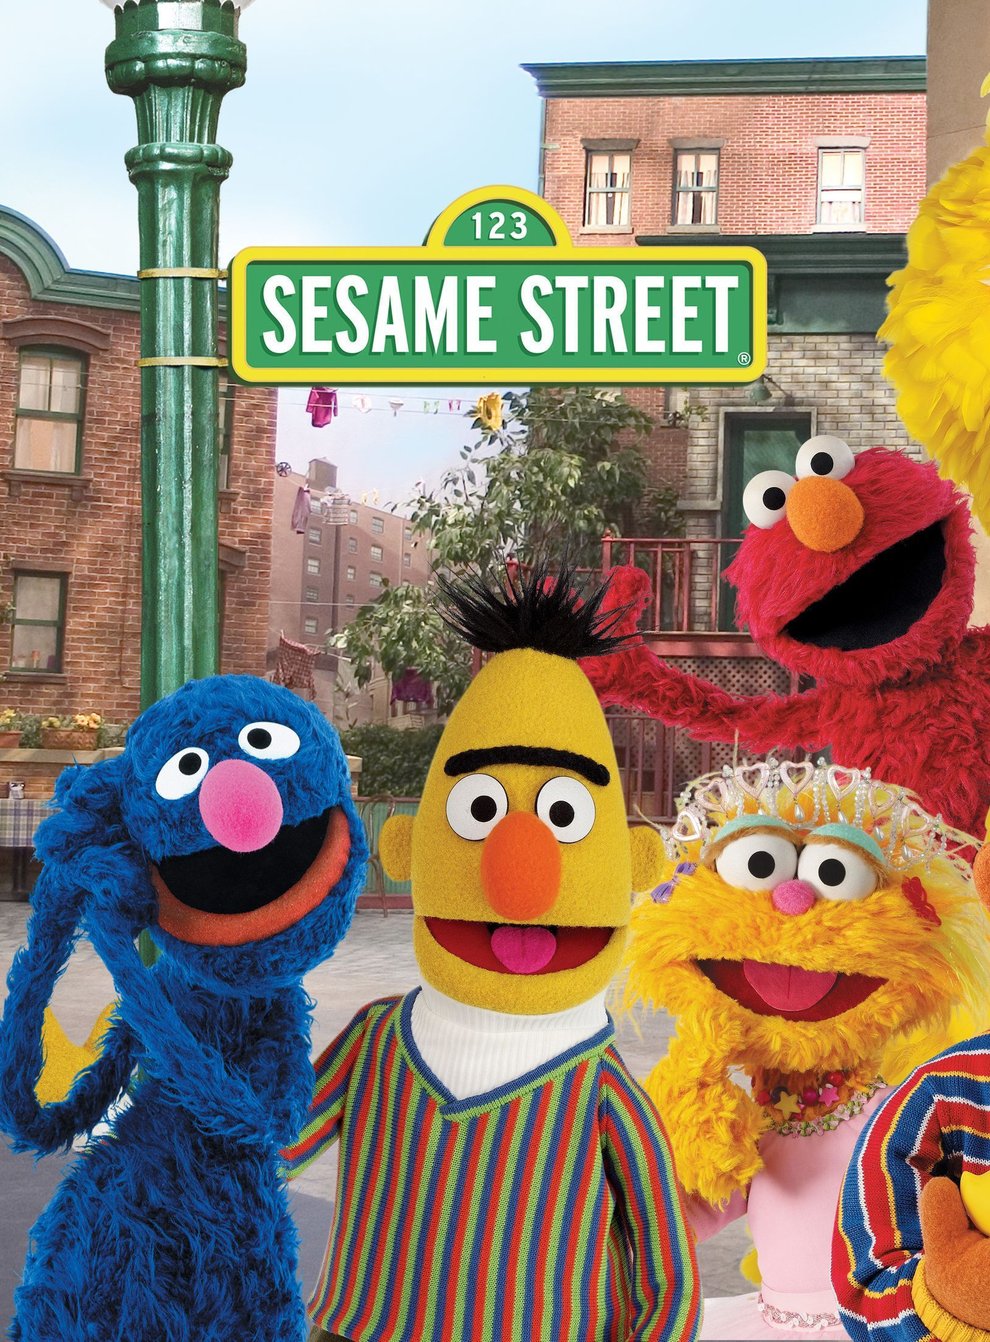 Sesame Street (John E Barett/PA)